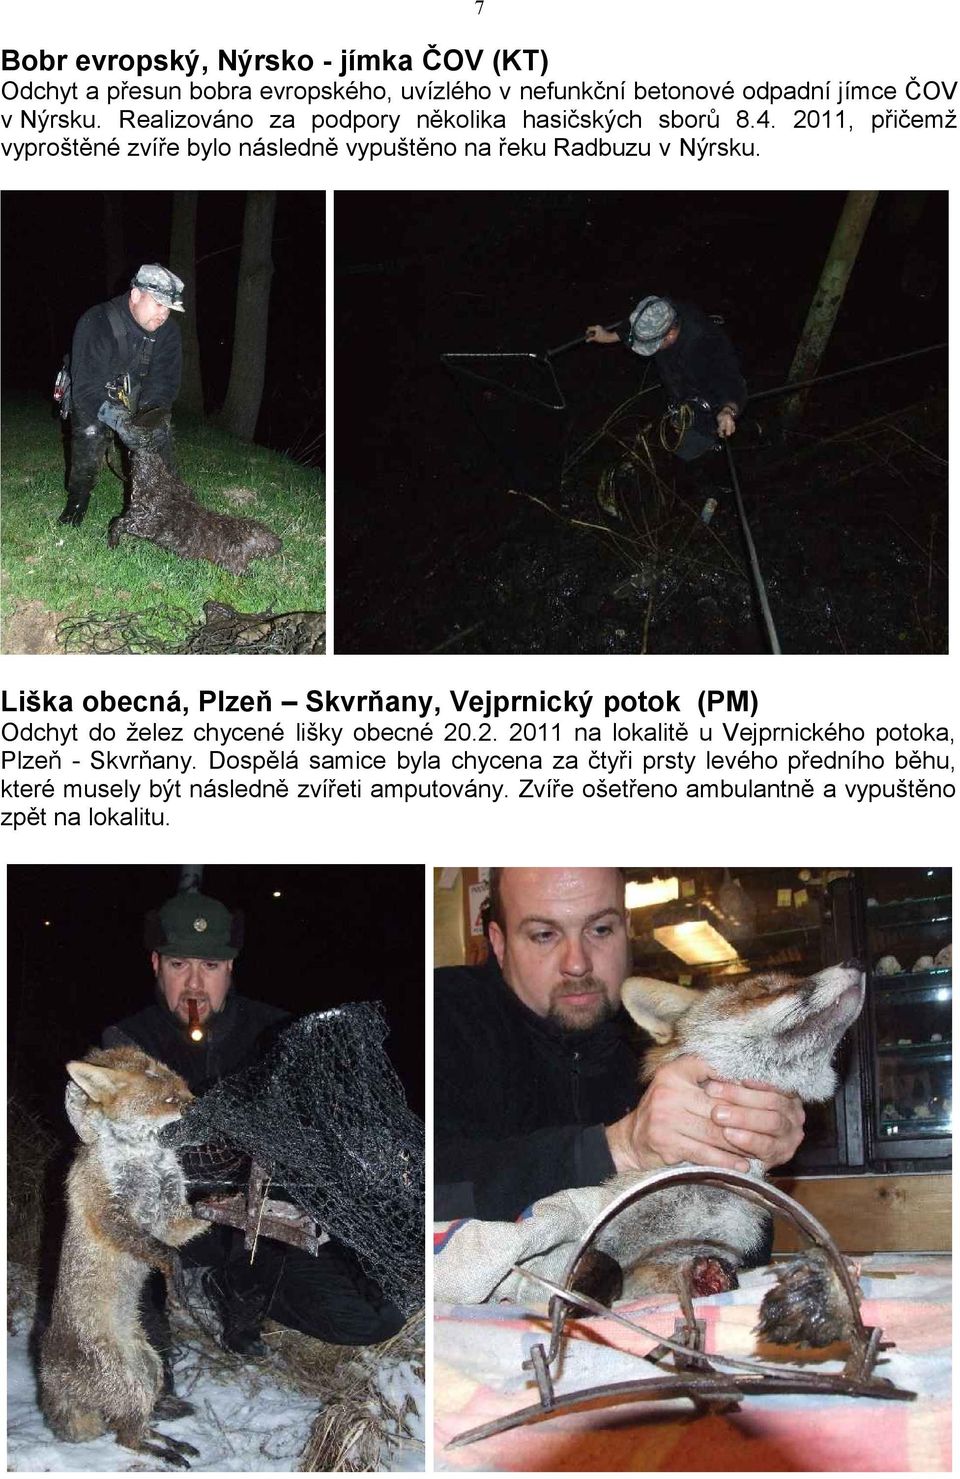 Liška obecná, Plzeň Skvrňany, Vejprnický potok (PM) Odchyt do želez chycené lišky obecné 20